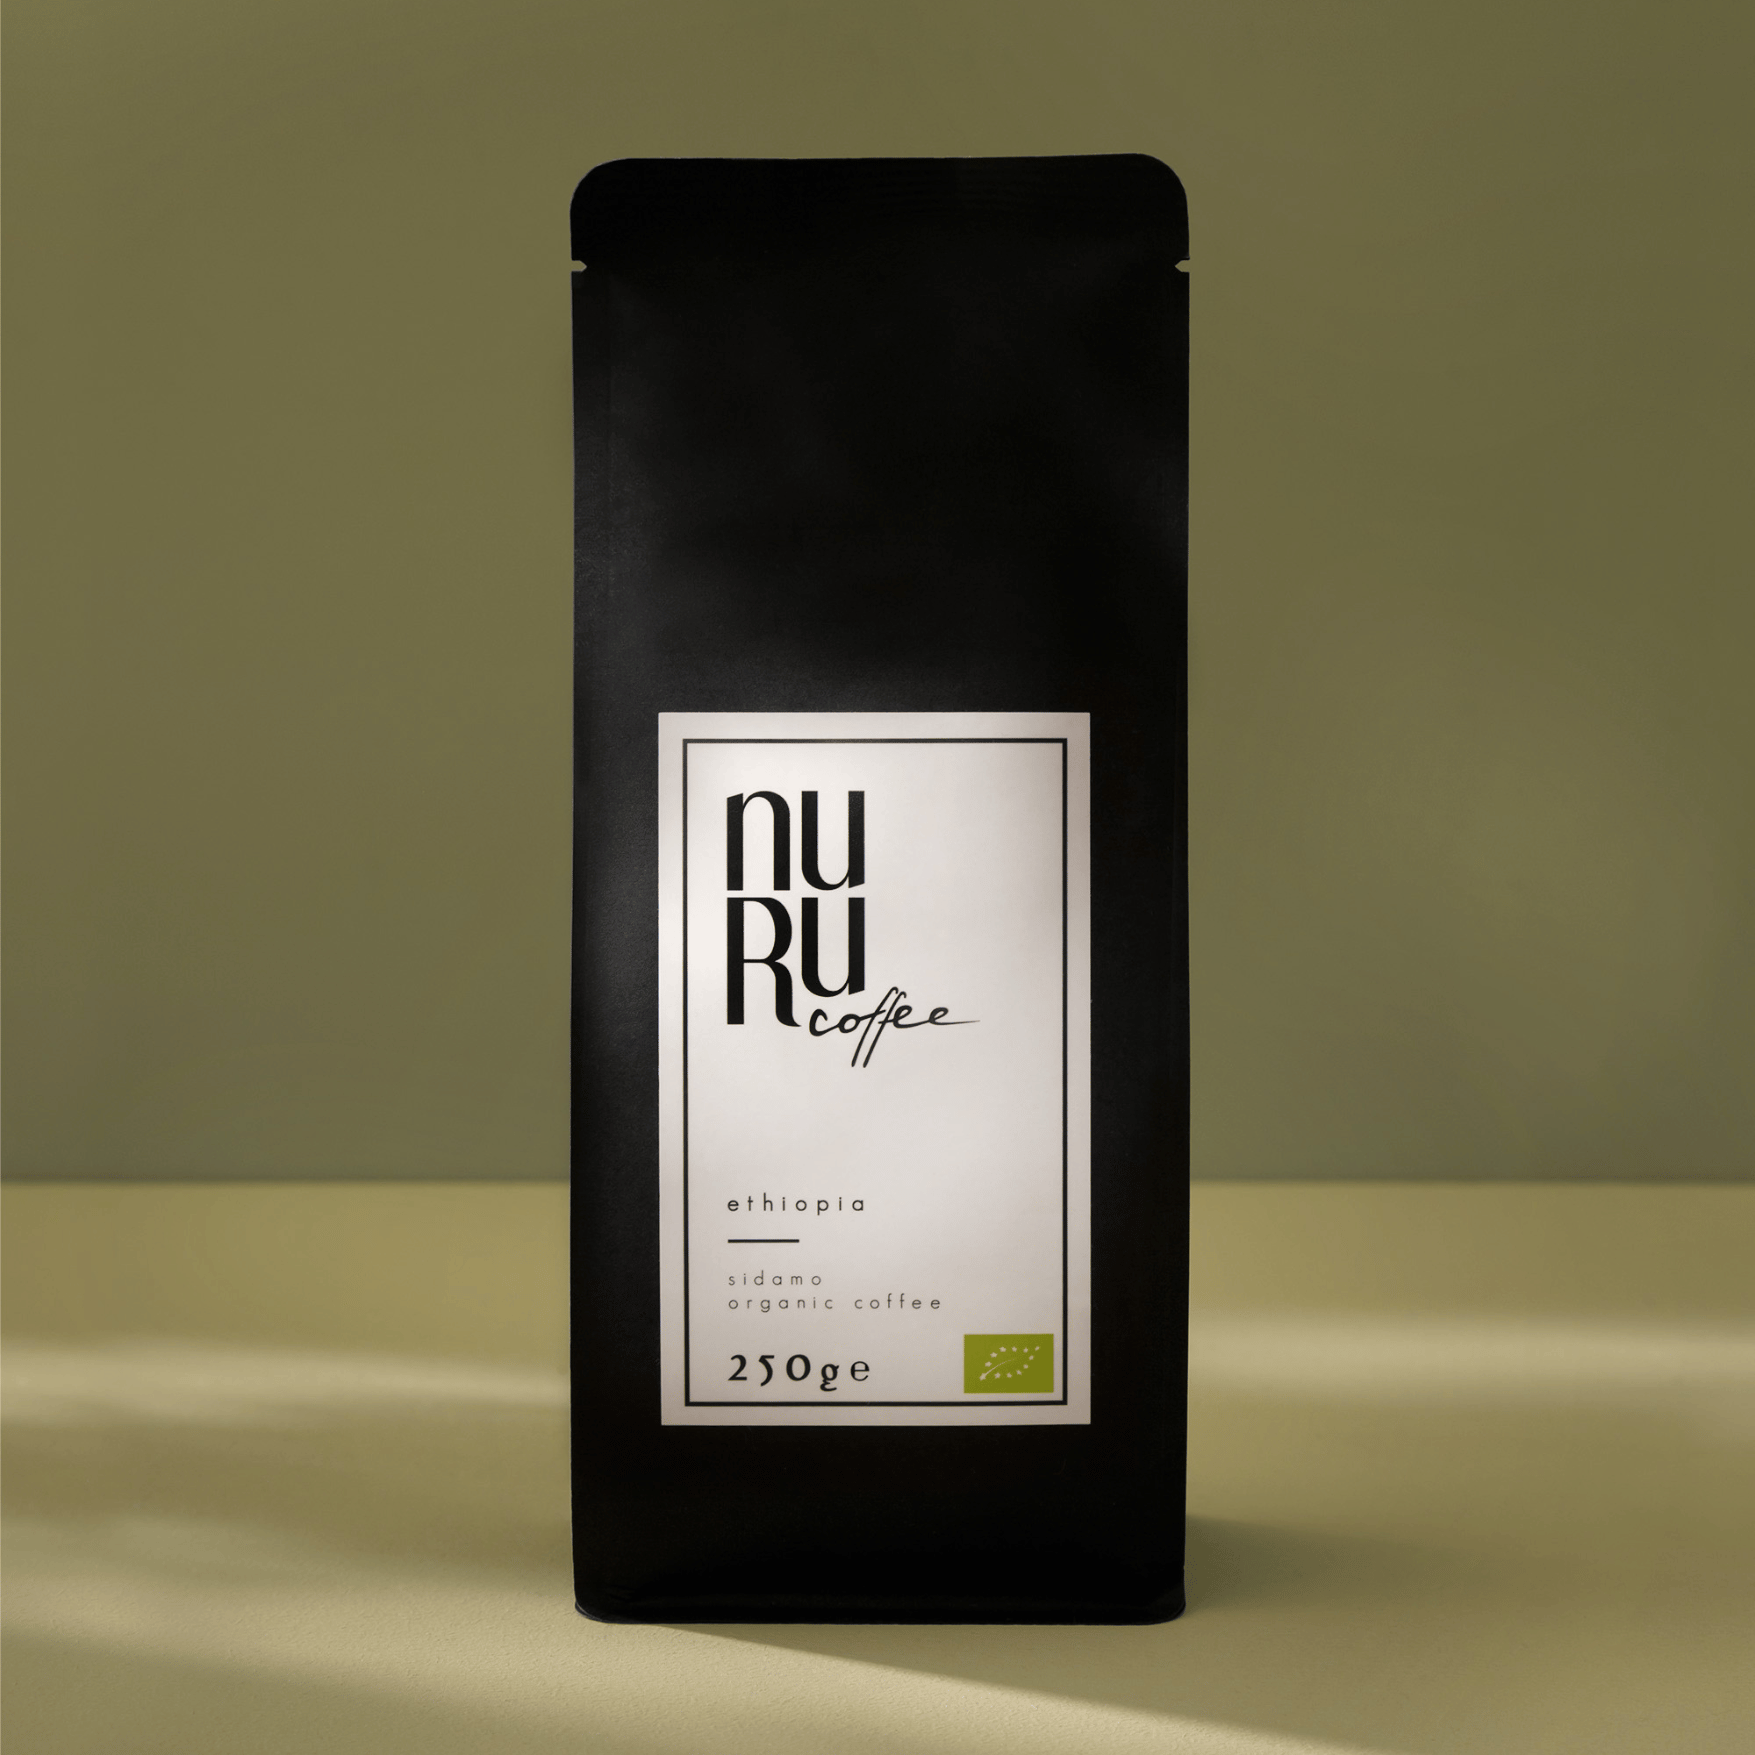 Produktbild Sidamo Coffee: fair gehandelter, nachhaltiger milder Kaffee mit social impact / nurucoffee